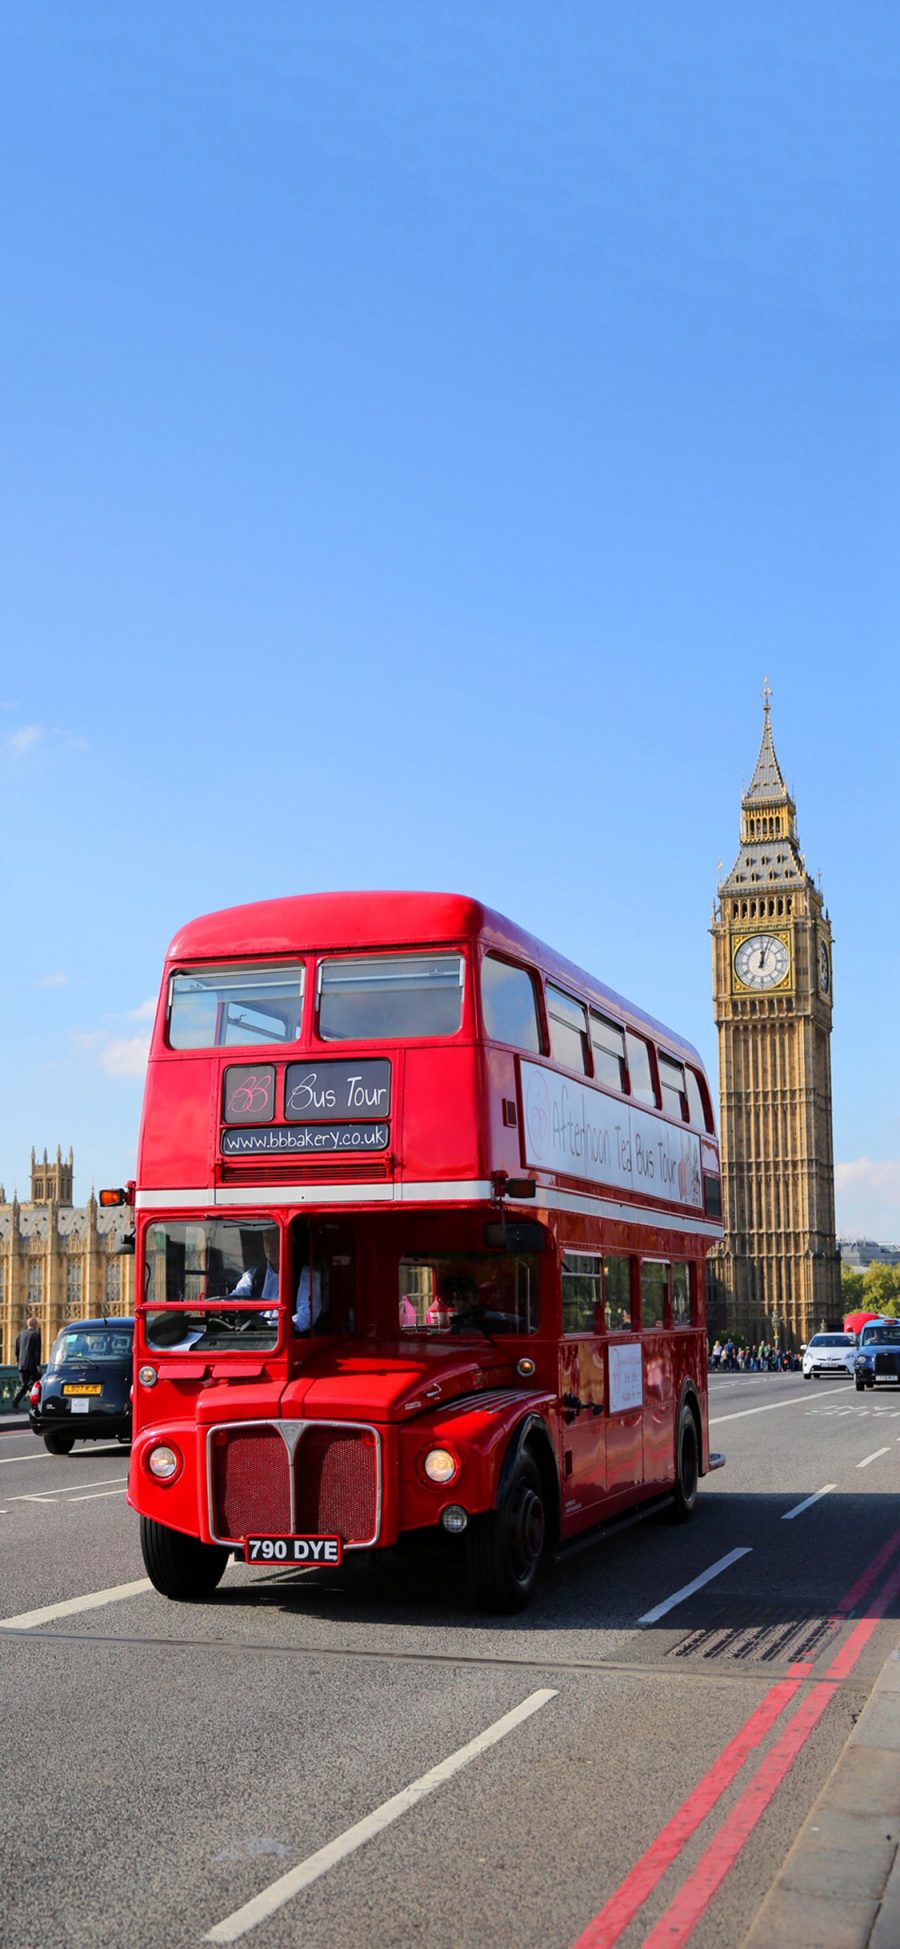 [2436×1125]英国 伦敦 大本钟 红色巴士 街道 车辆 城市 苹果手机壁纸图片